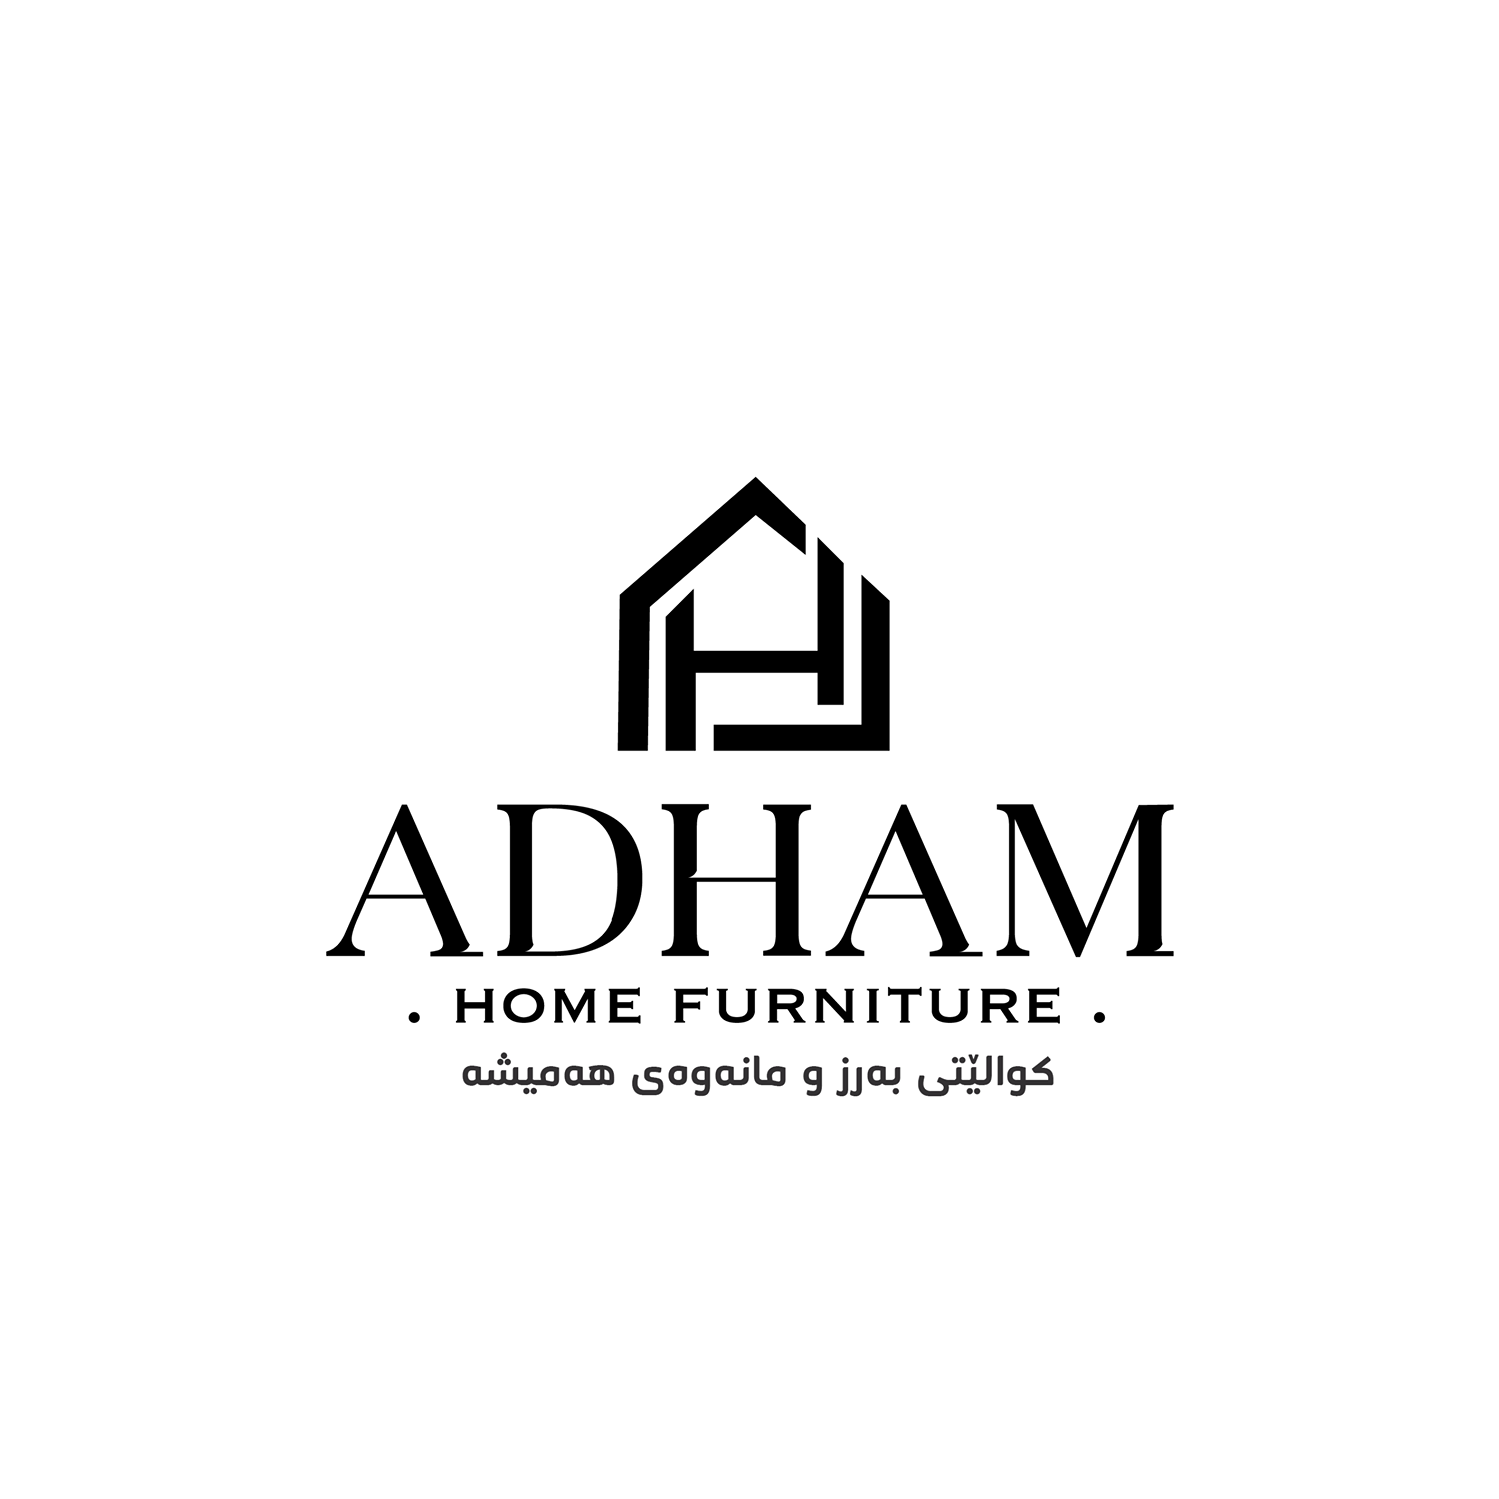 ADHAM HOME